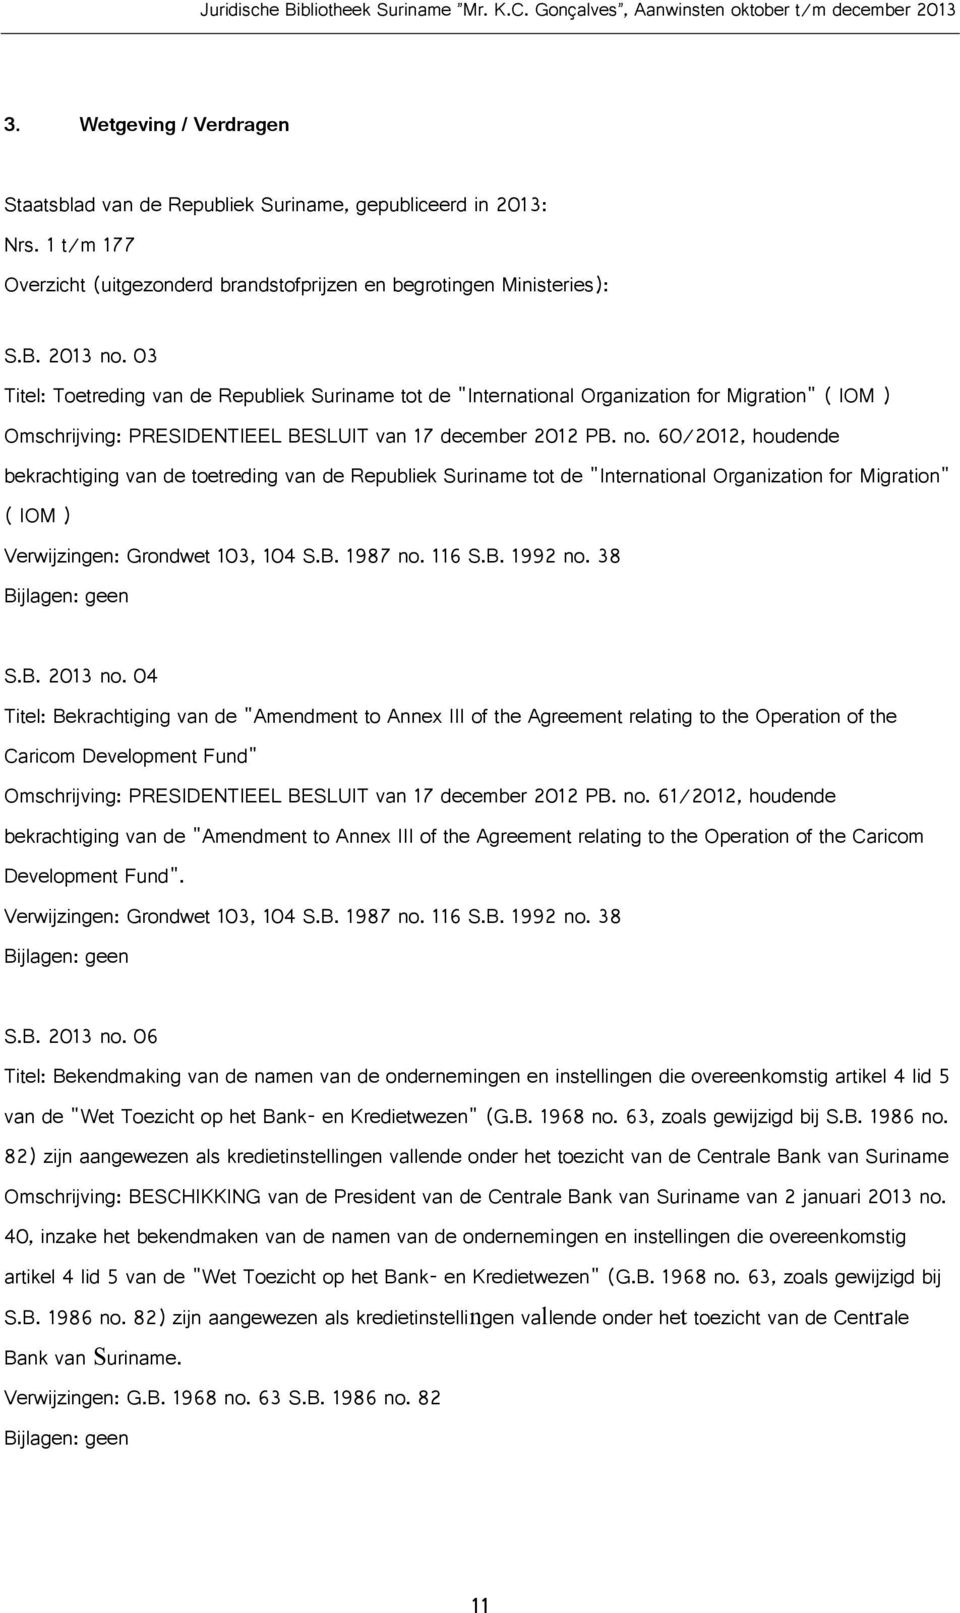 60/2012, houdende bekrachtiging van de toetreding van de Republiek Suriname tot de "International Organization for Migration" ( IOM ) Verwijzingen: Grondwet 103, 104 S.B. 1987 no. 116 S.B. 1992 no.